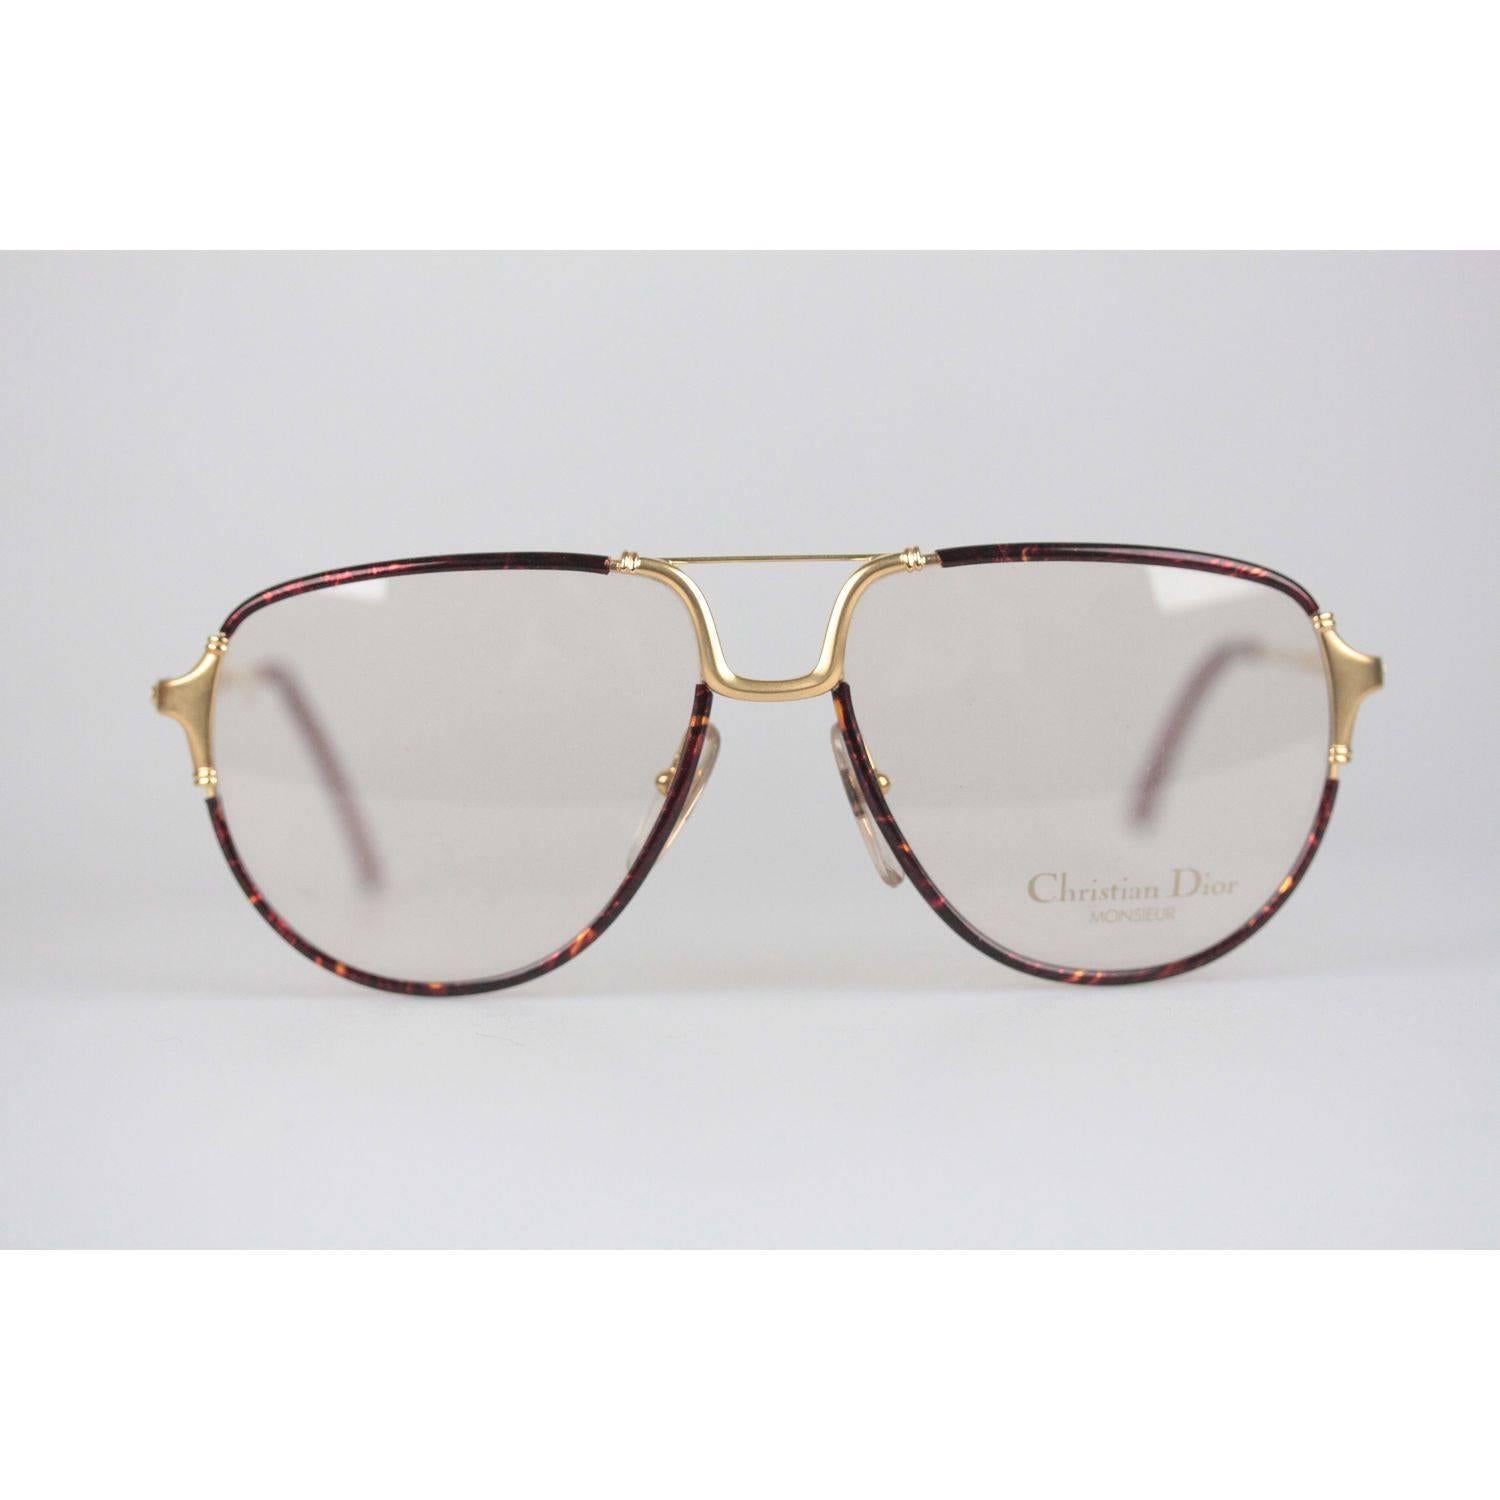 Christian Dior Monsieur Vintage Gold Brown Frame Eyeglasses 2327 59mm 140 NOS 6